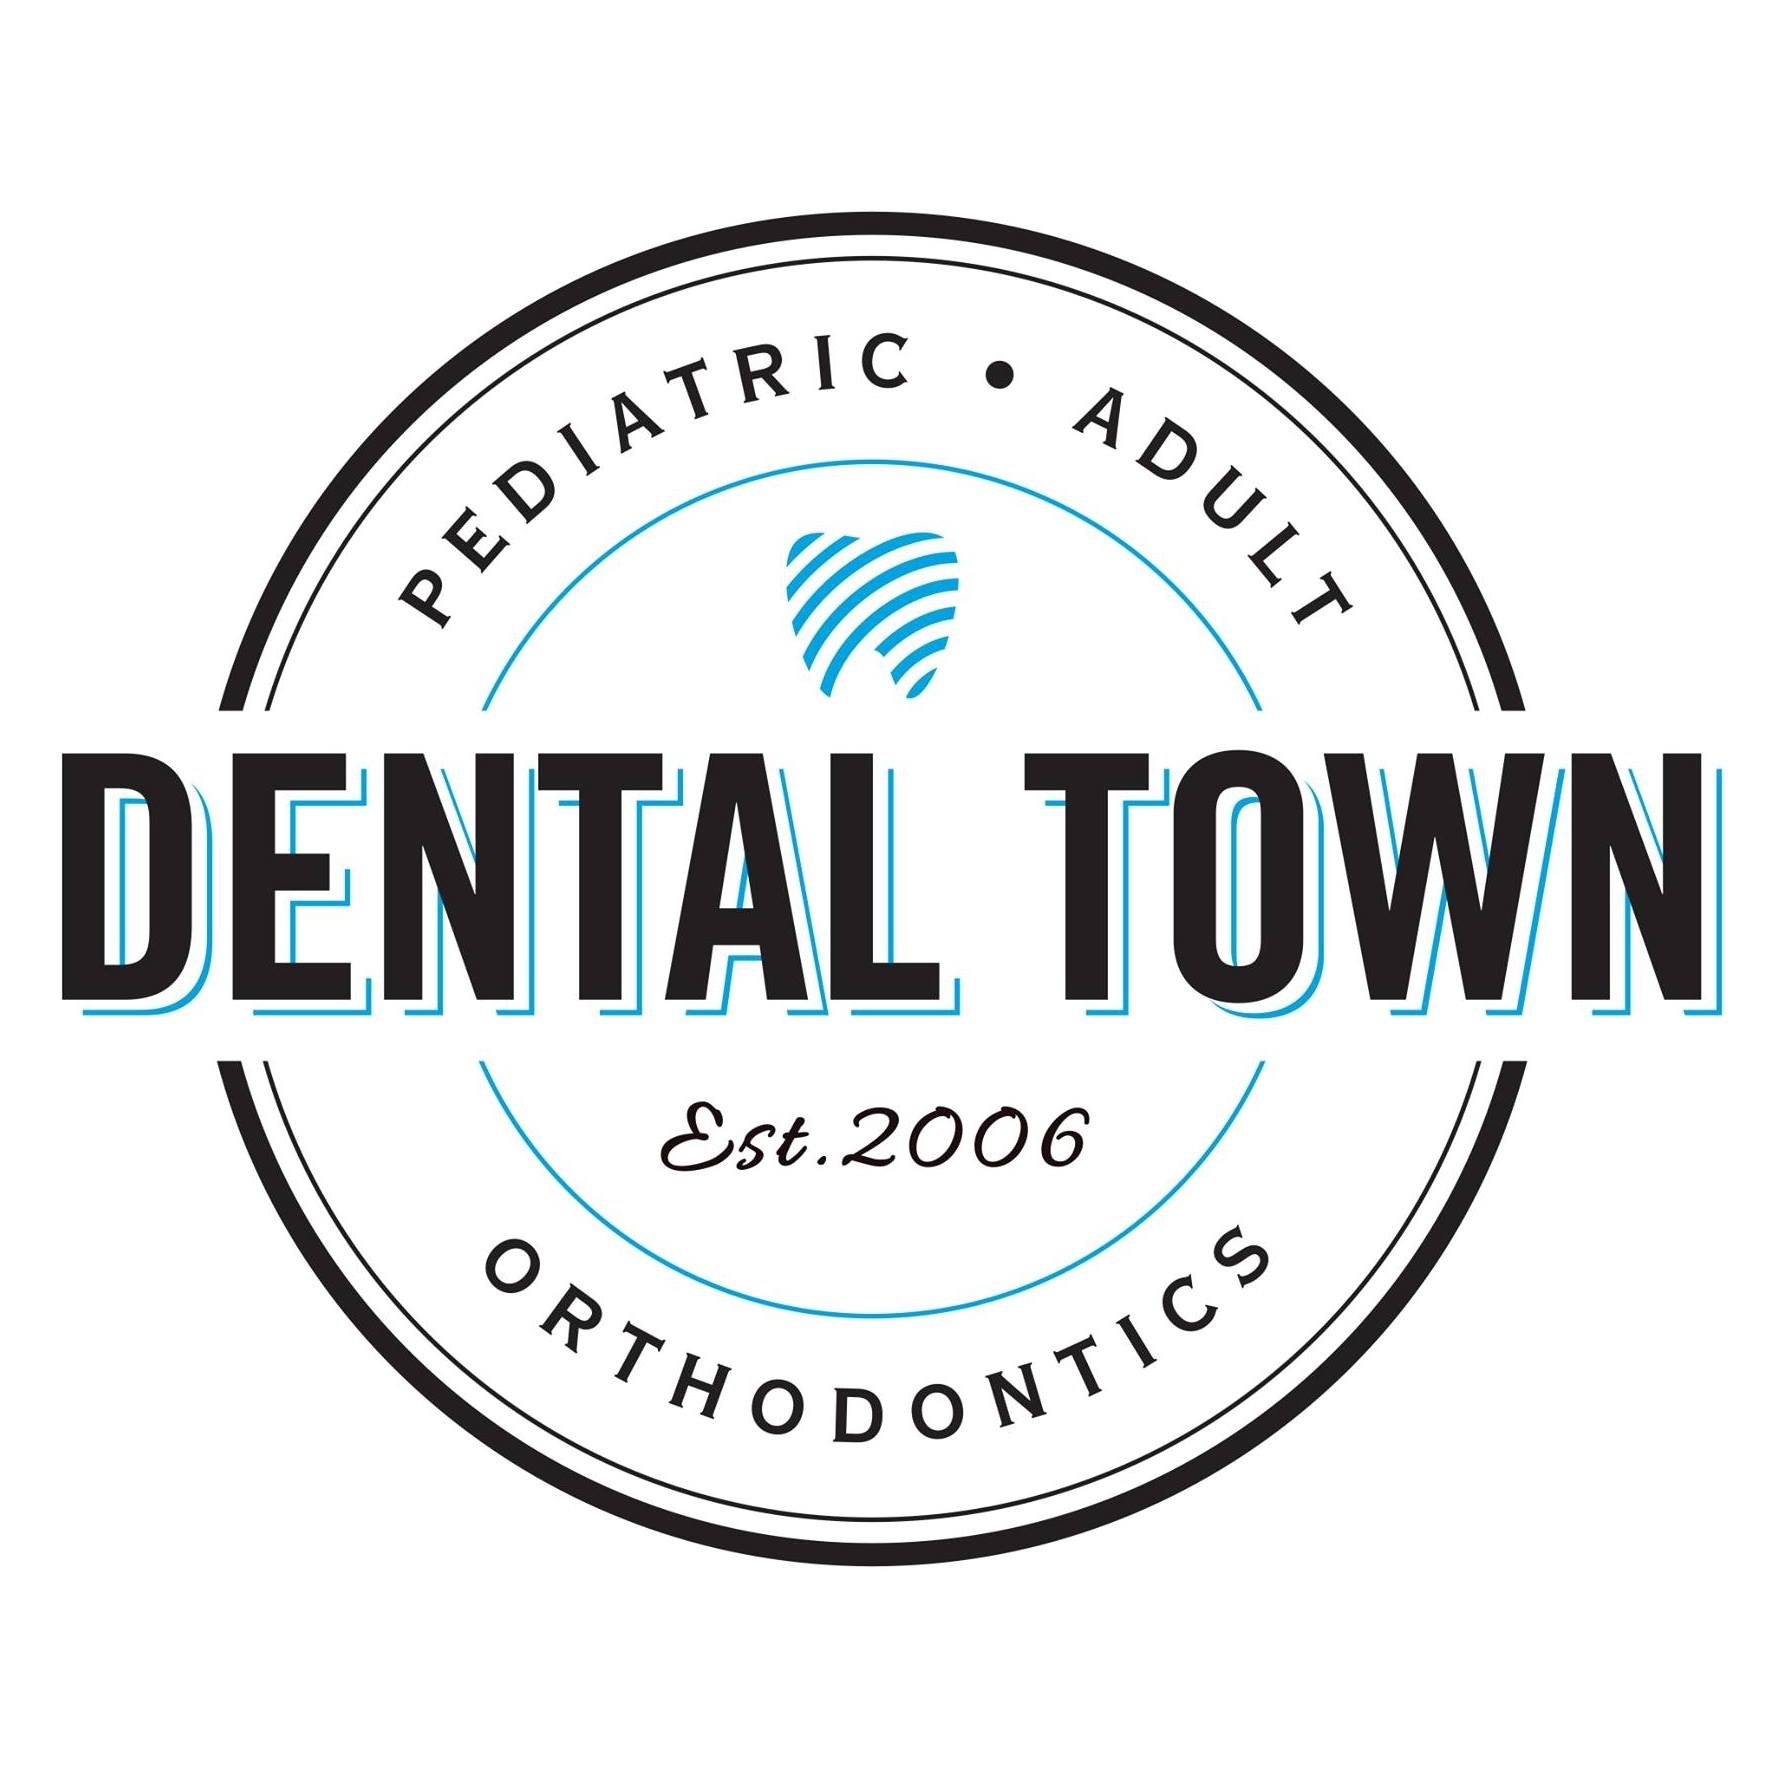 Woodstock Dental Town